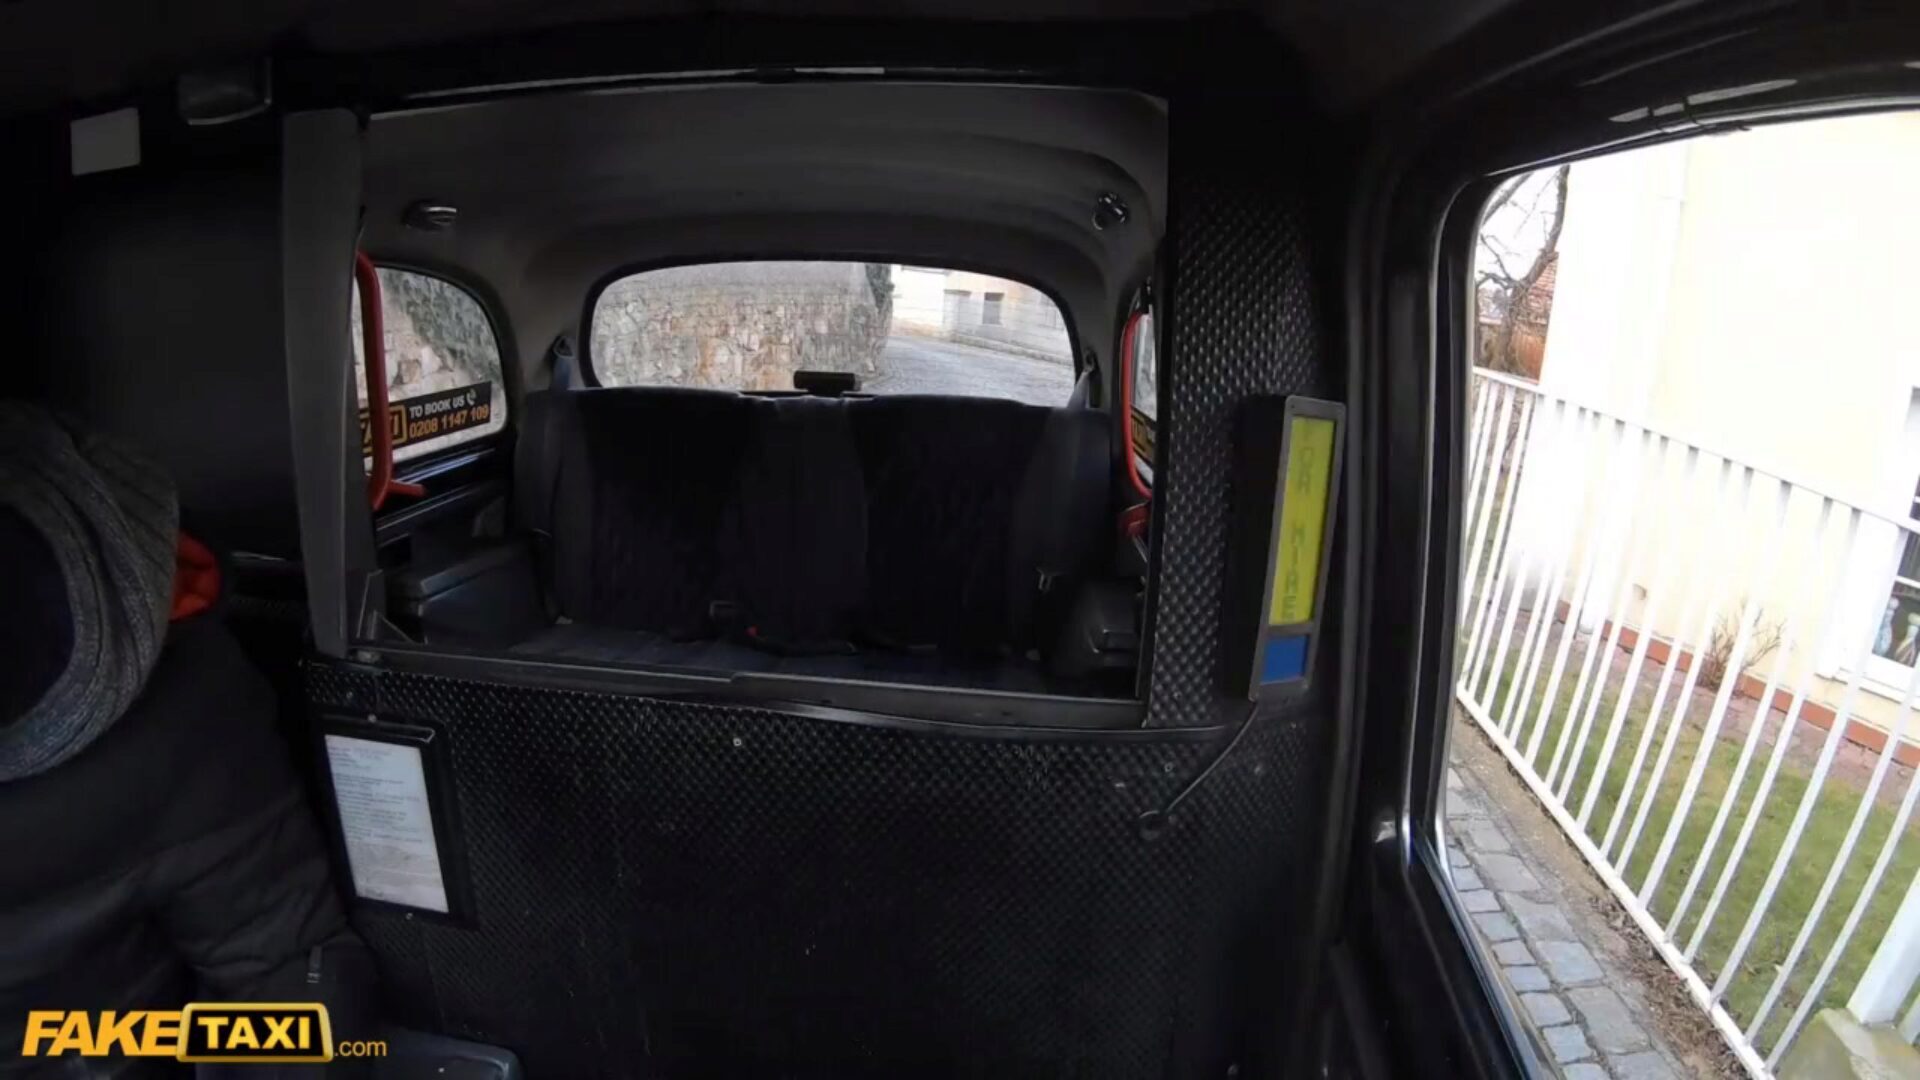 سيارة أجرة وهمية العسل الآسيوية يتلقى لها تخزين ممزقة ومهبل محشوة من قبل سائق التاكسي الإيطالي